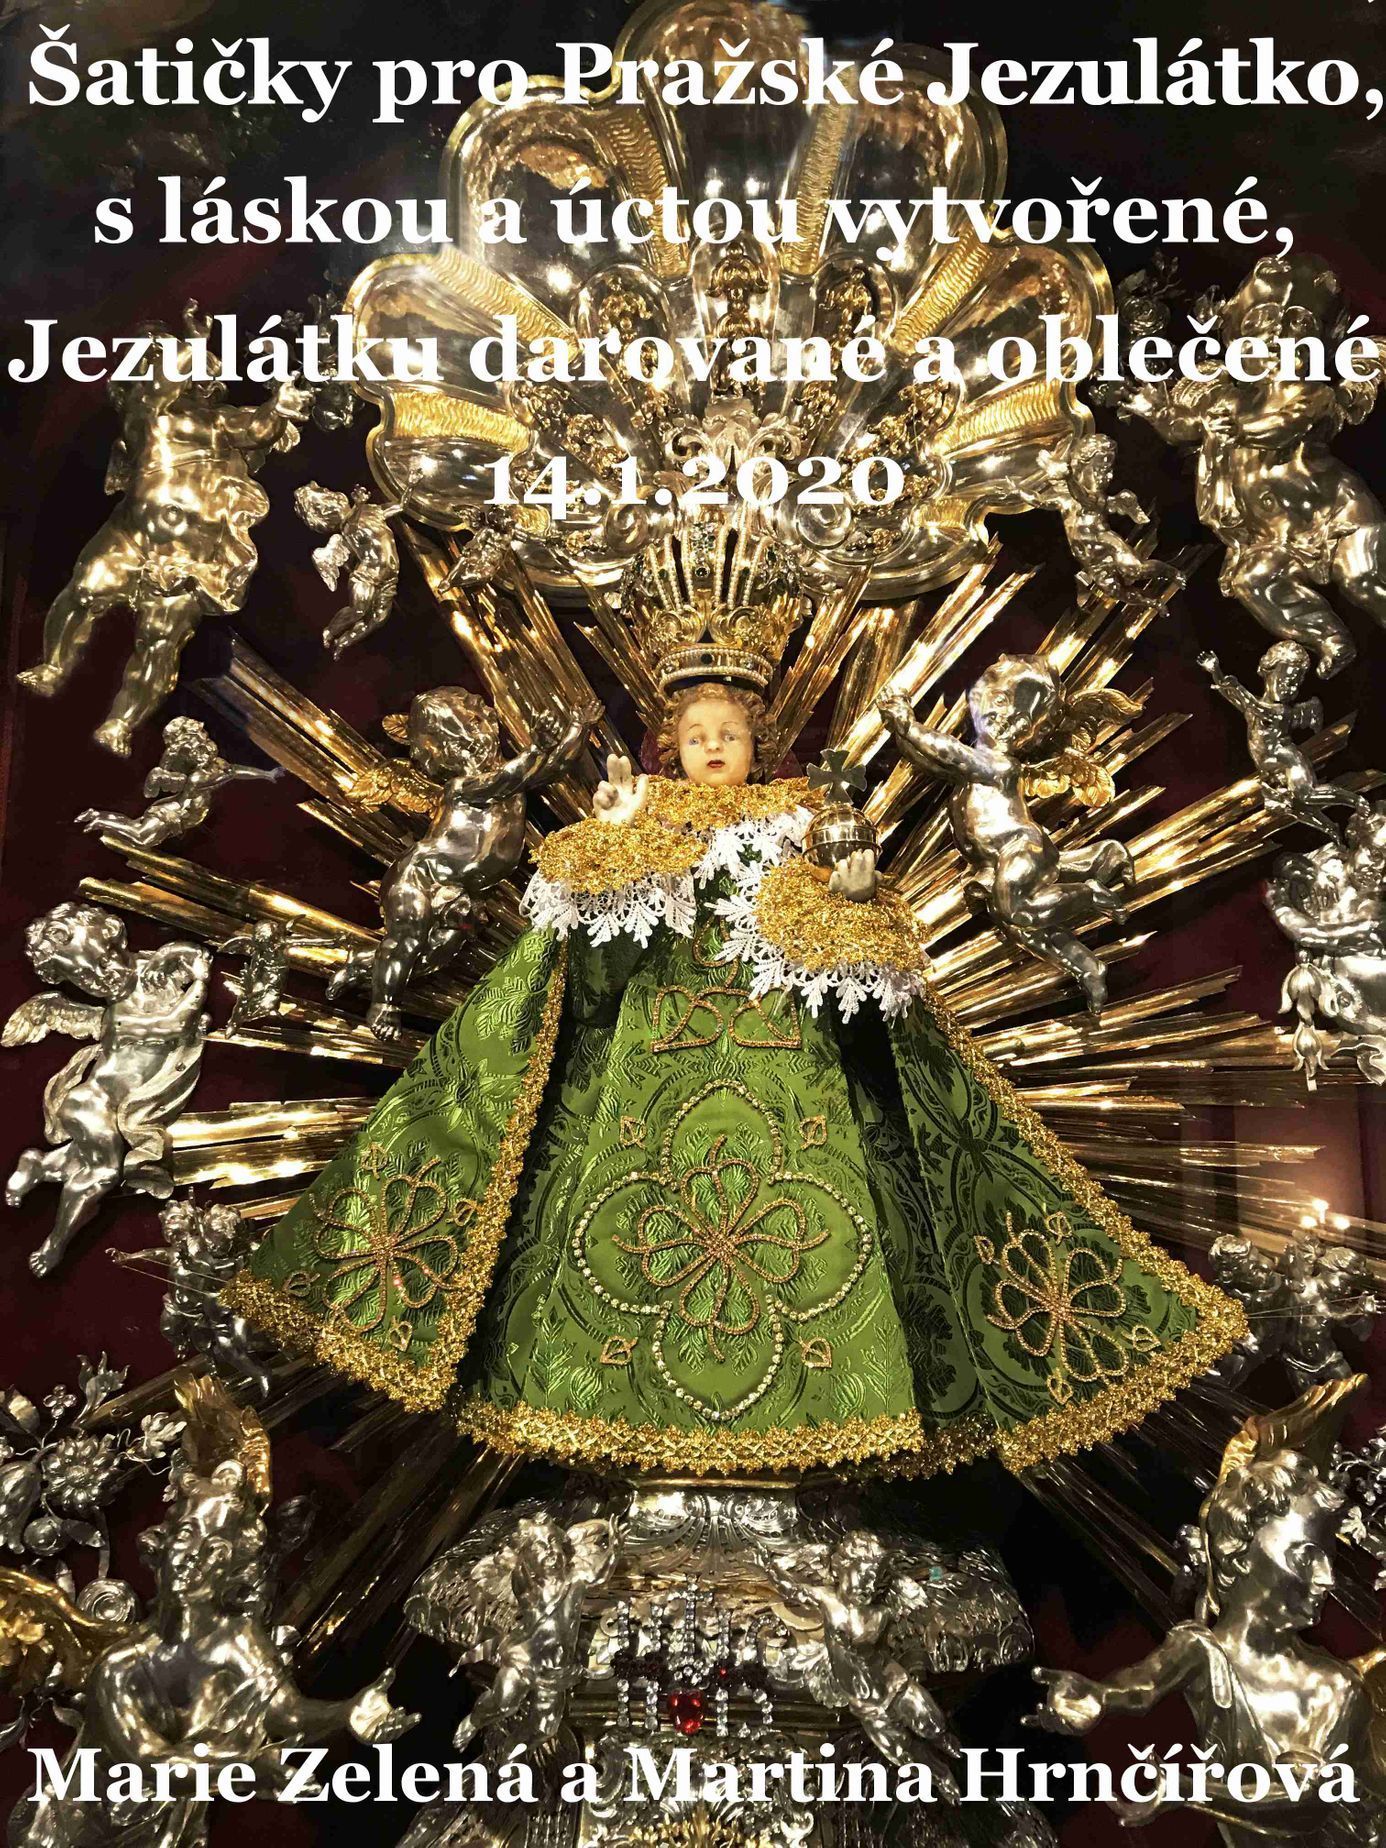 Pražské Jezulátko v šatech Marie Zelené a její dcery Martiny Hrnčířové